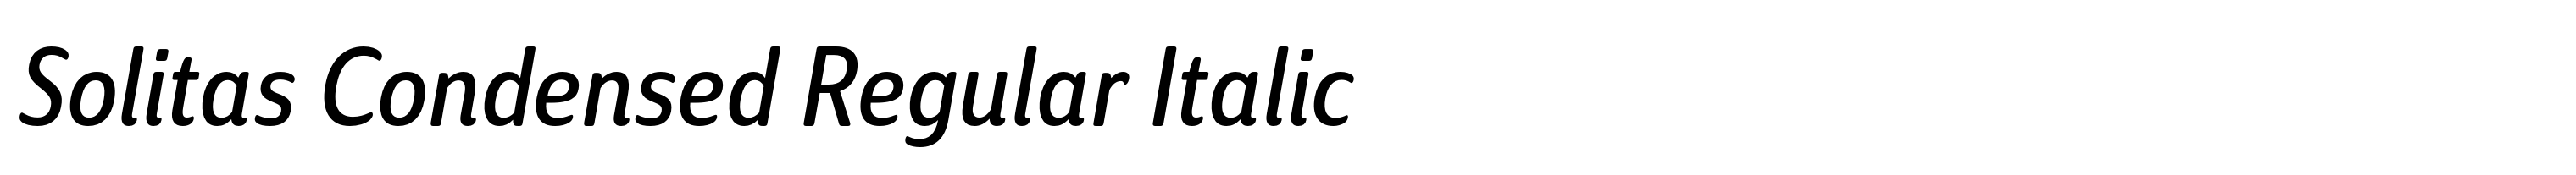 Solitas Condensed Regular Italic